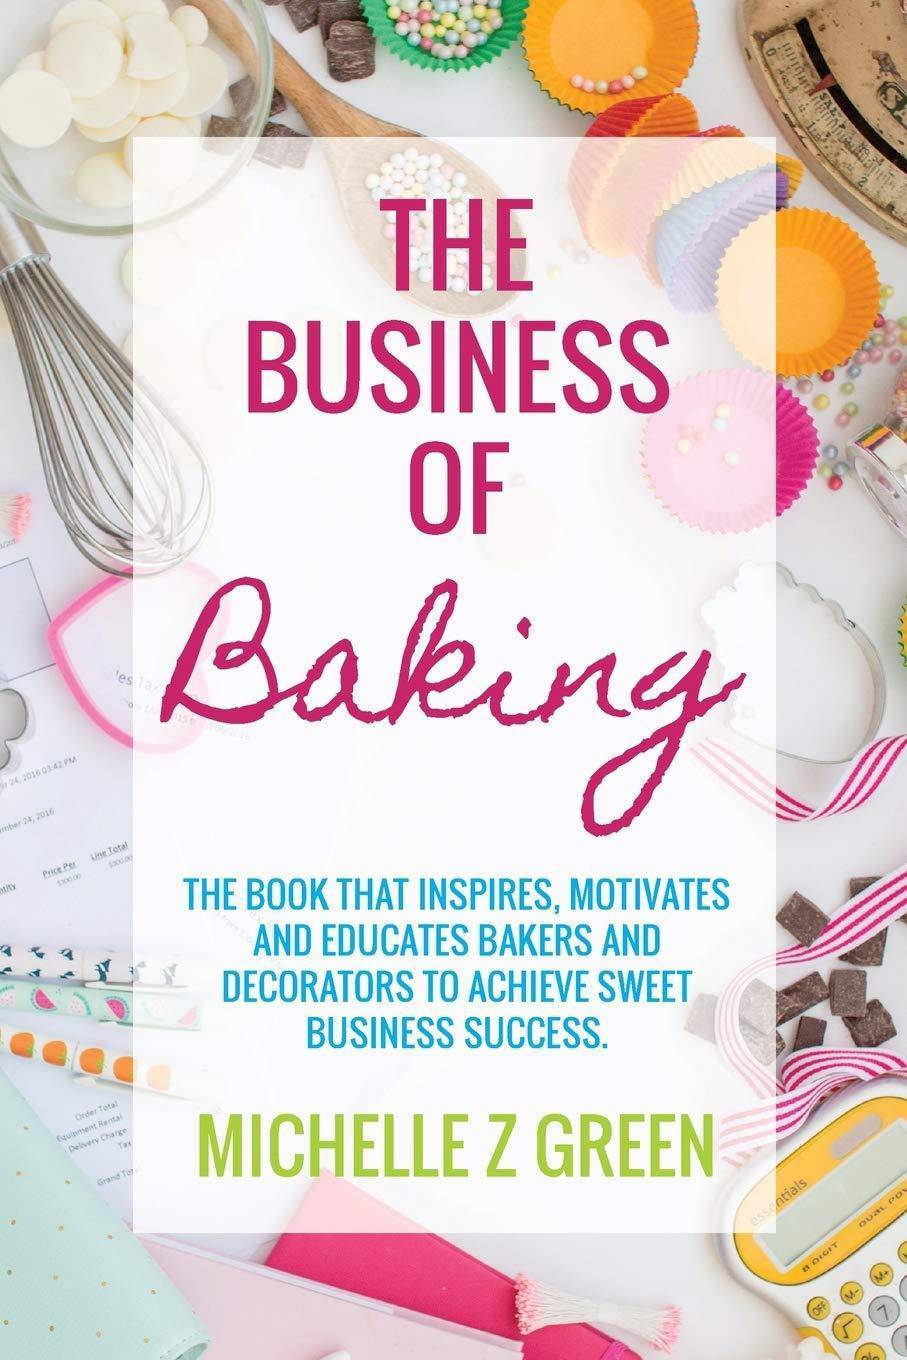 The Business of Baking - SureShot Books Publishing LLC